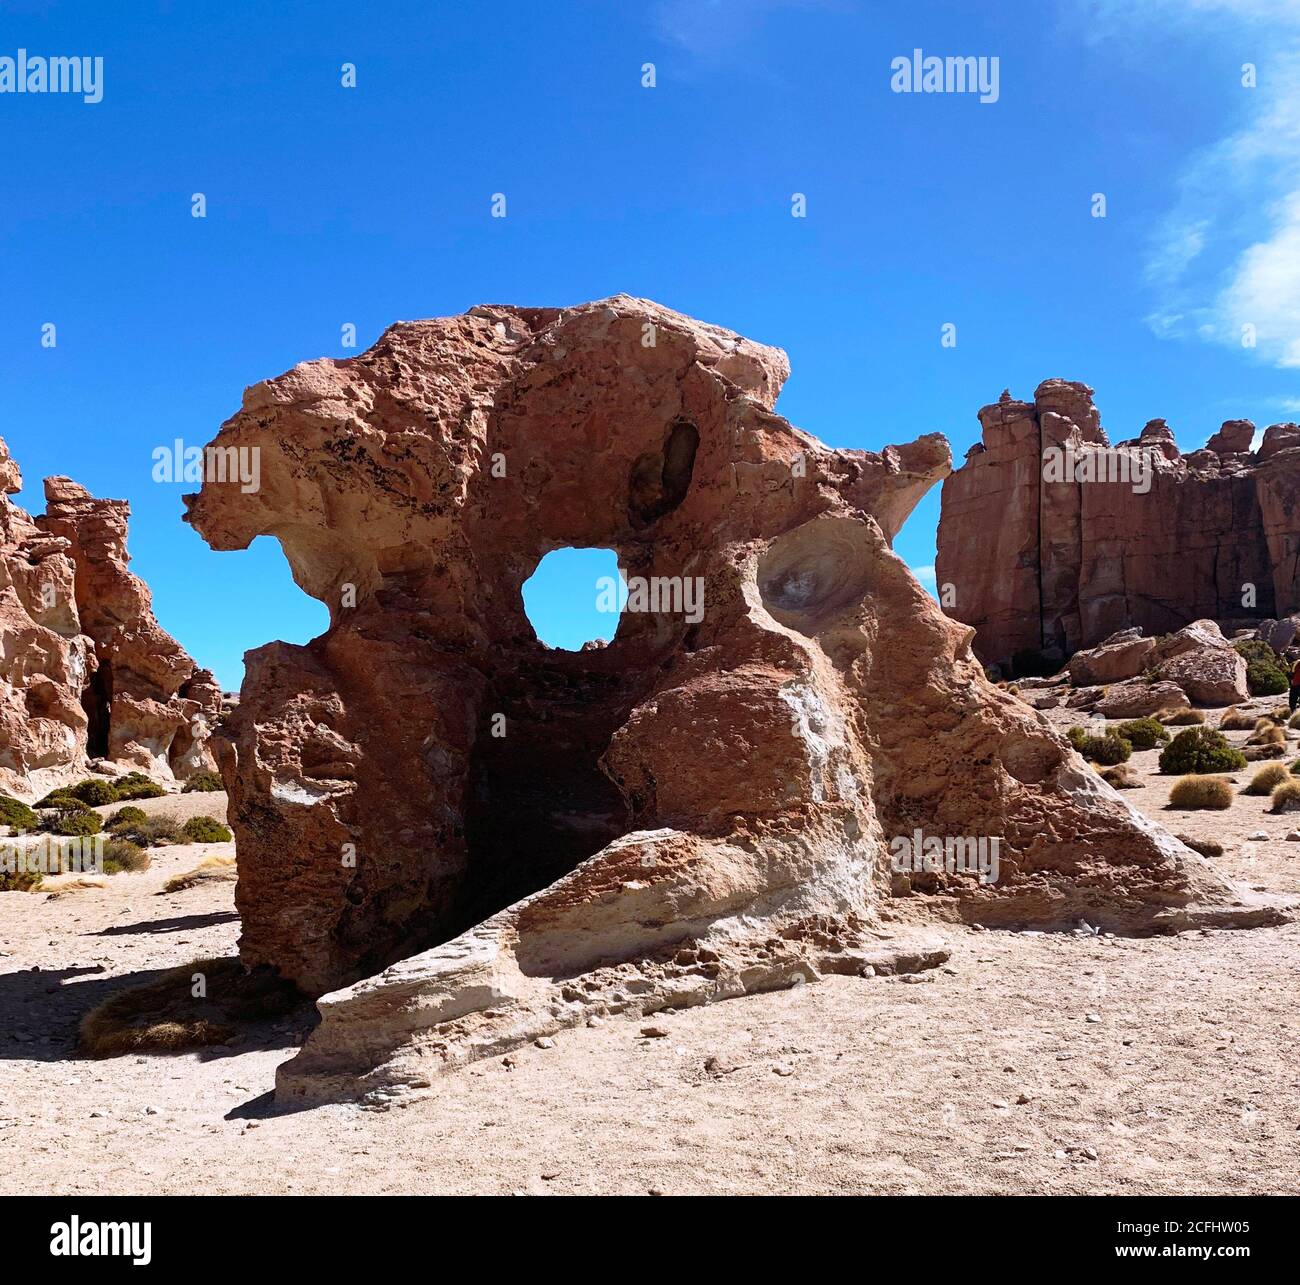 Surreale Gesteinsformation mit rundem Loch in der Atacama Wüste, ungewöhnliche geologische Formation in extremem Gelände, landschaftlich reizvolle Klippen Landschaft, einzigartige Felsen, Lone Stockfoto